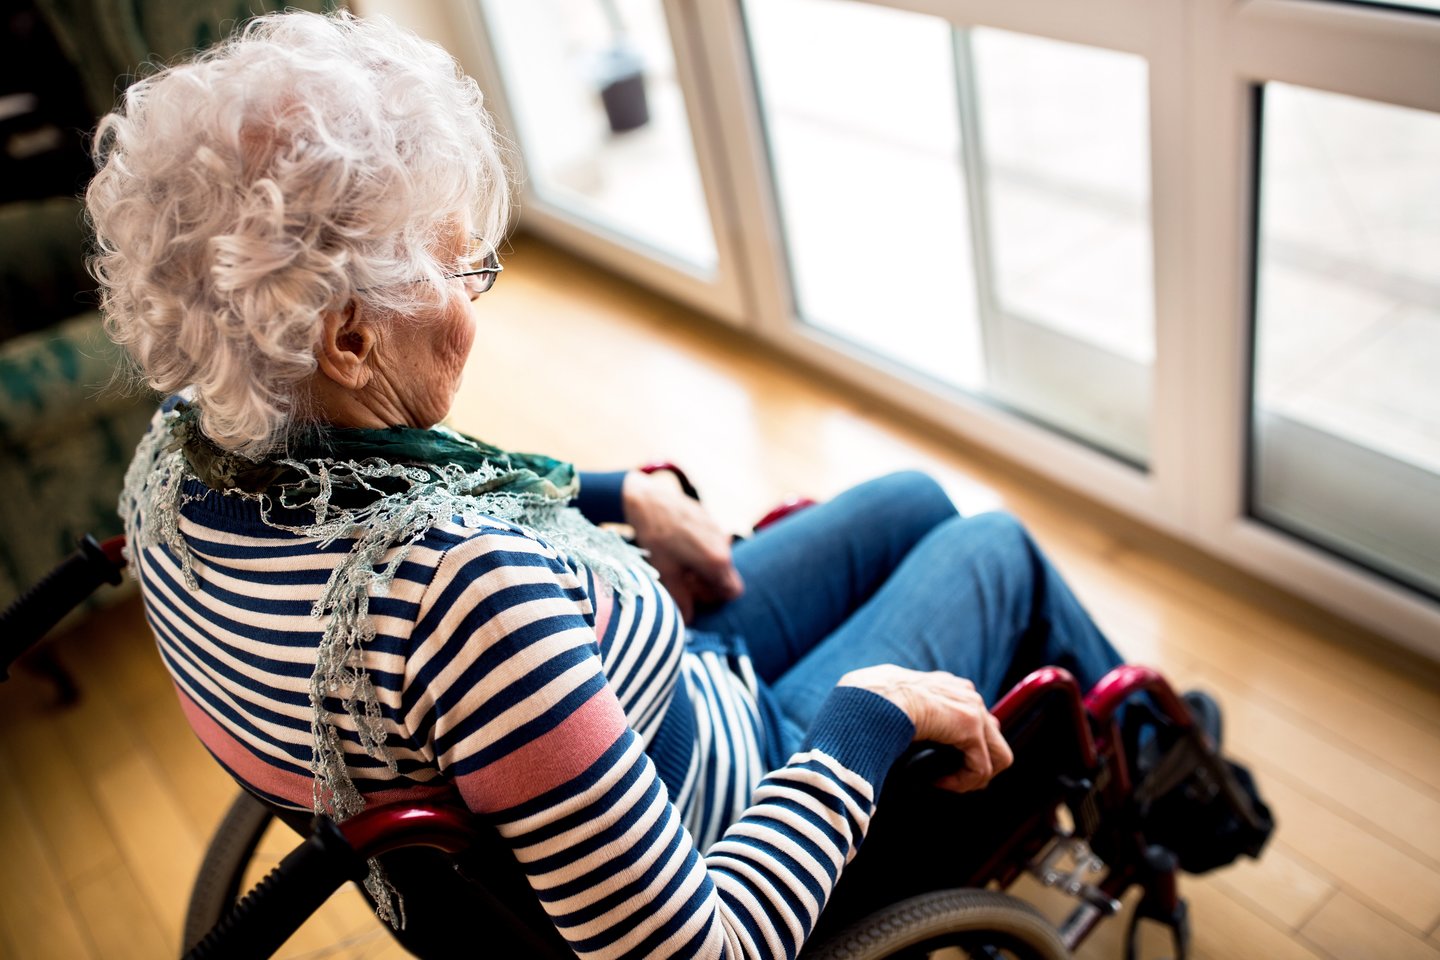 Į neįgaliojo vežimėlį atsisėdusiai moteriai už likimo smūgius skaudesnis buvo žmonių abejingumas.<br> 123rf asociatyvioji nuotr.